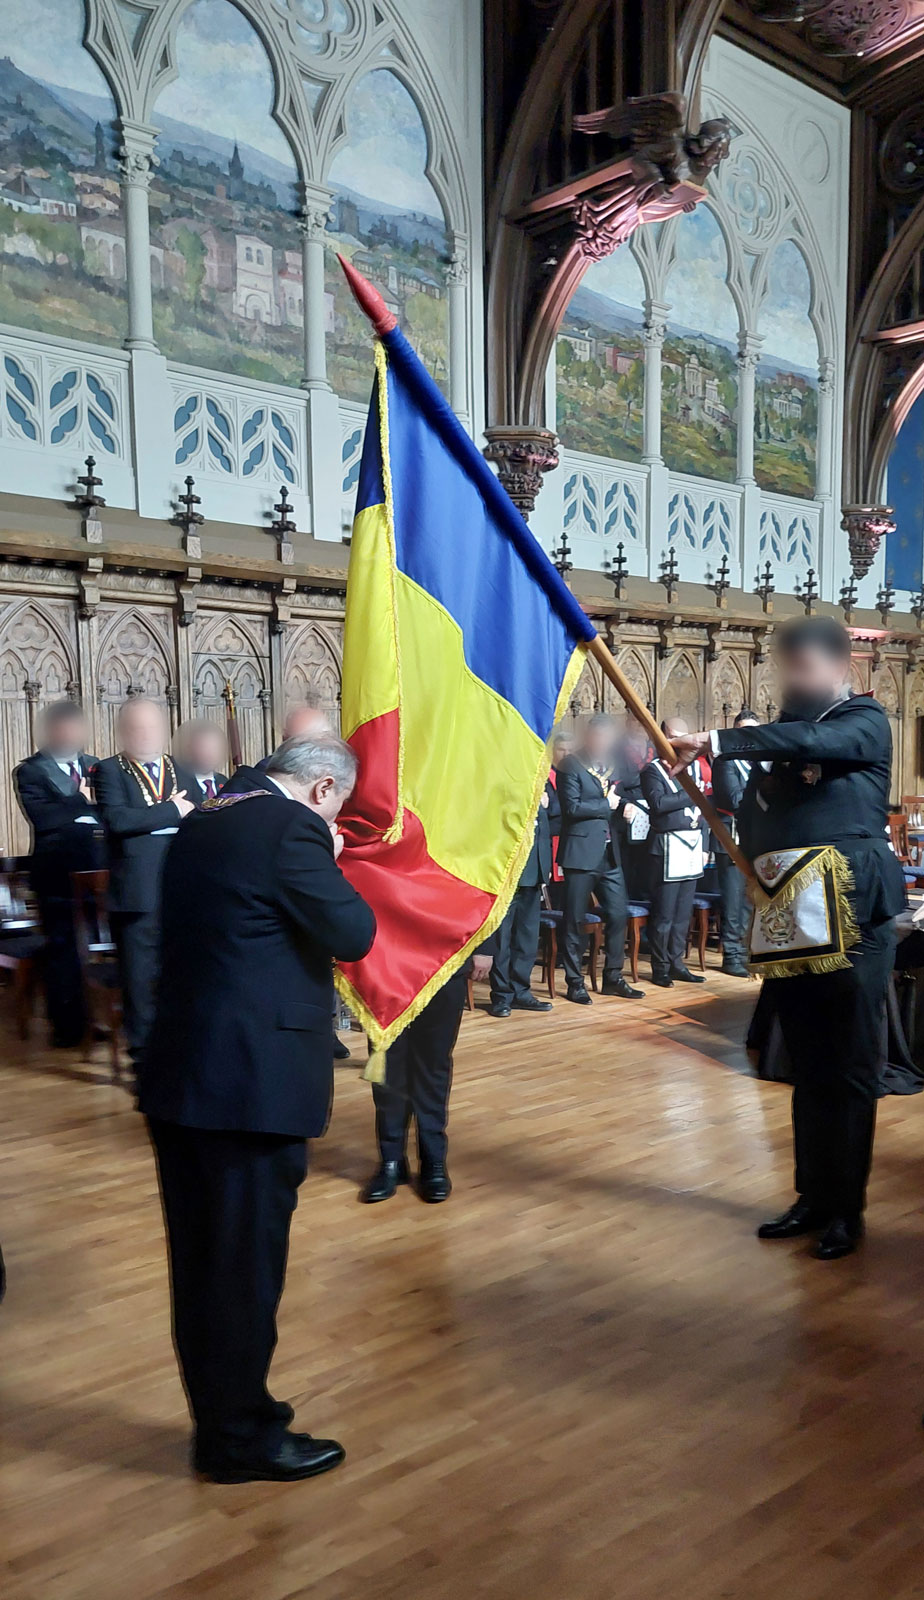 Ținută Iași - Drapelul tricolor